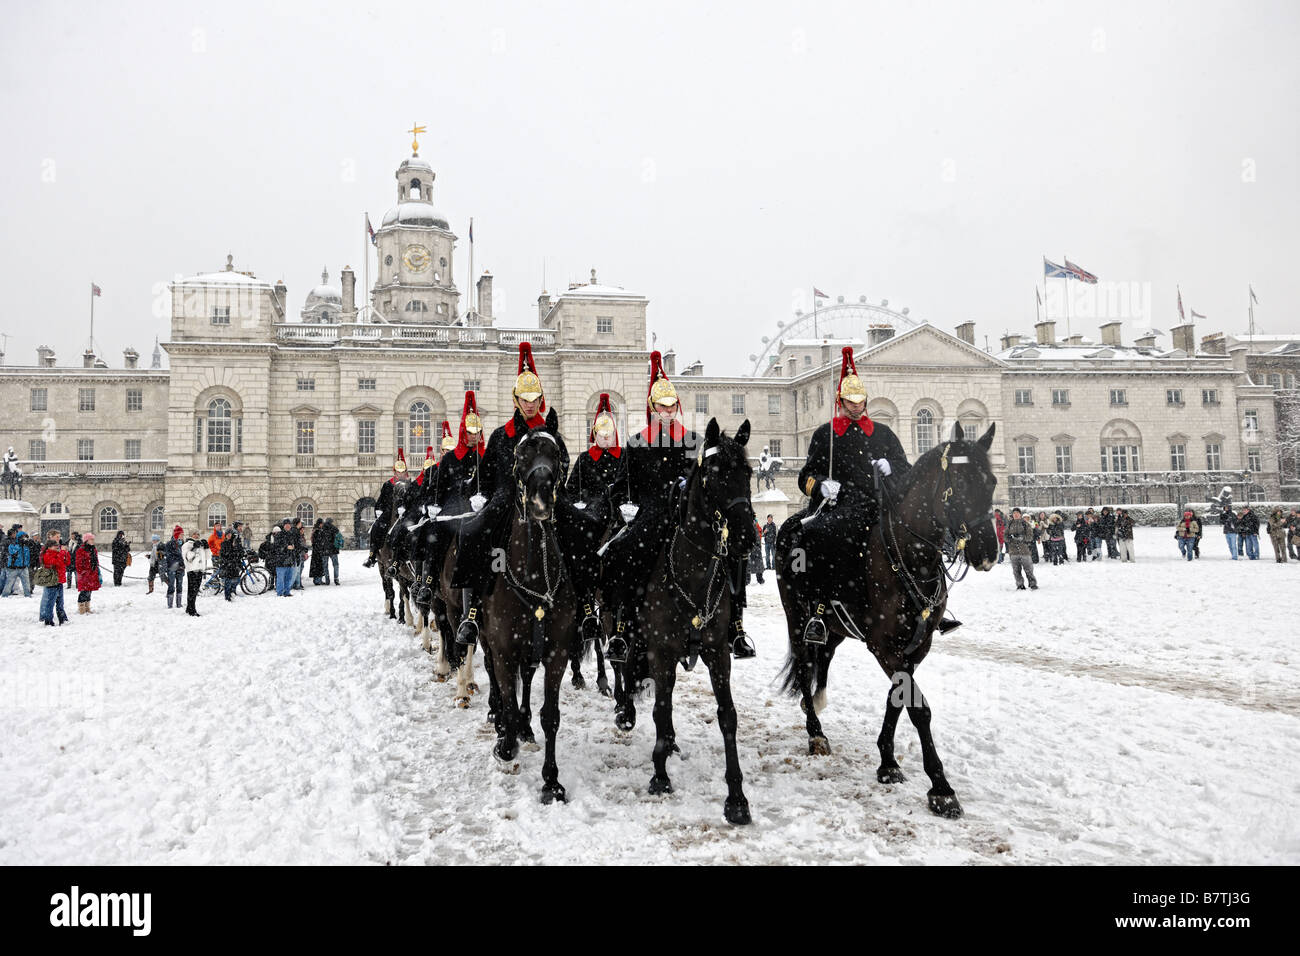 El hogar de la Caballería de caballo a través de la nieve a través Horseguards Parade, para cumplir funciones en el Palacio de Buckingham después de un cambio de guardia Foto de stock